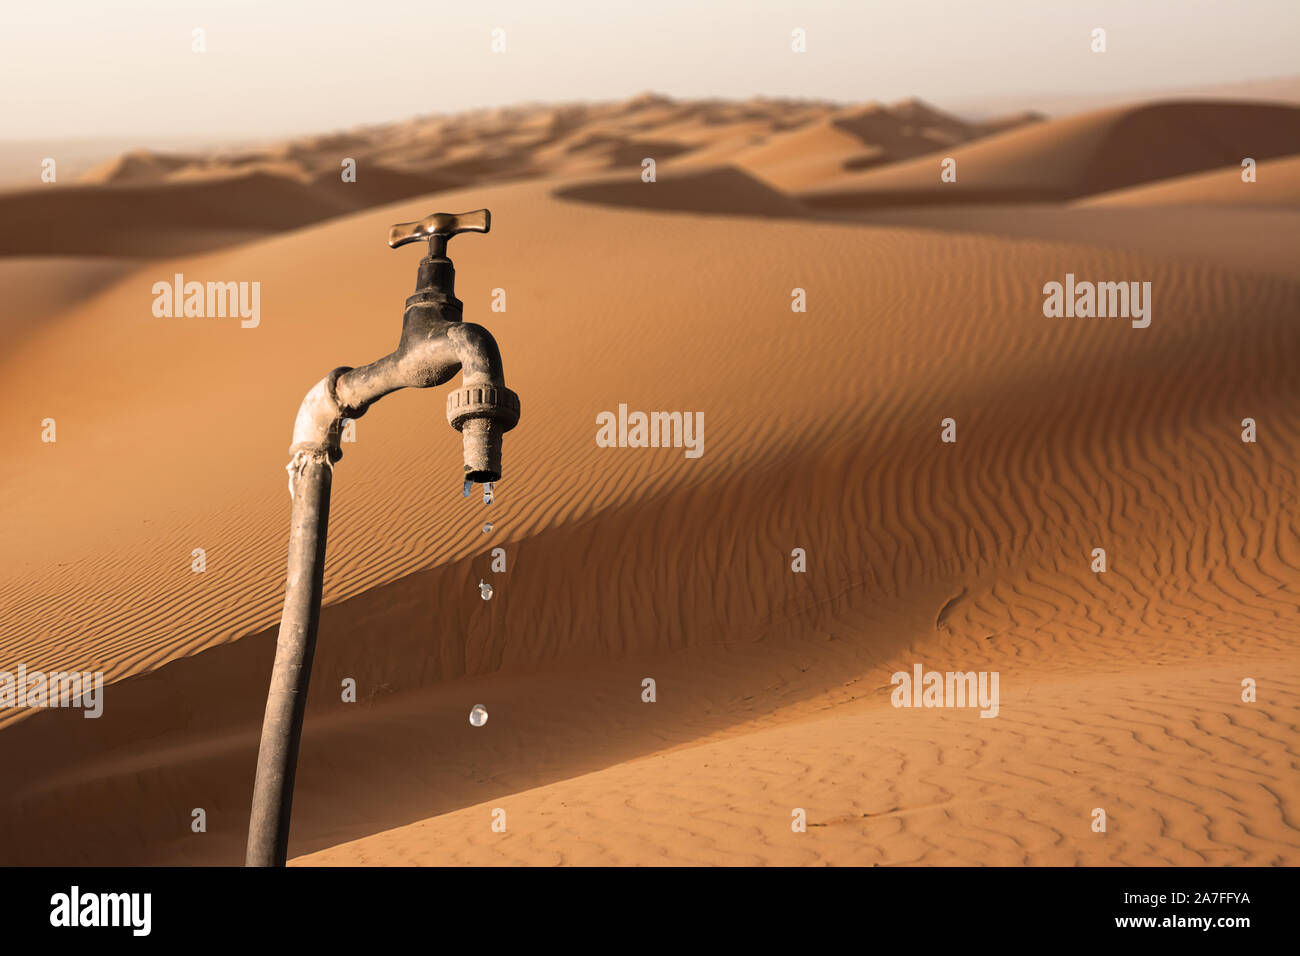 Tropfenden Hahn und Umwelt Wüste im Hintergrund, Konzept der Austrocknung des Planeten und Wasserknappheit Stockfoto